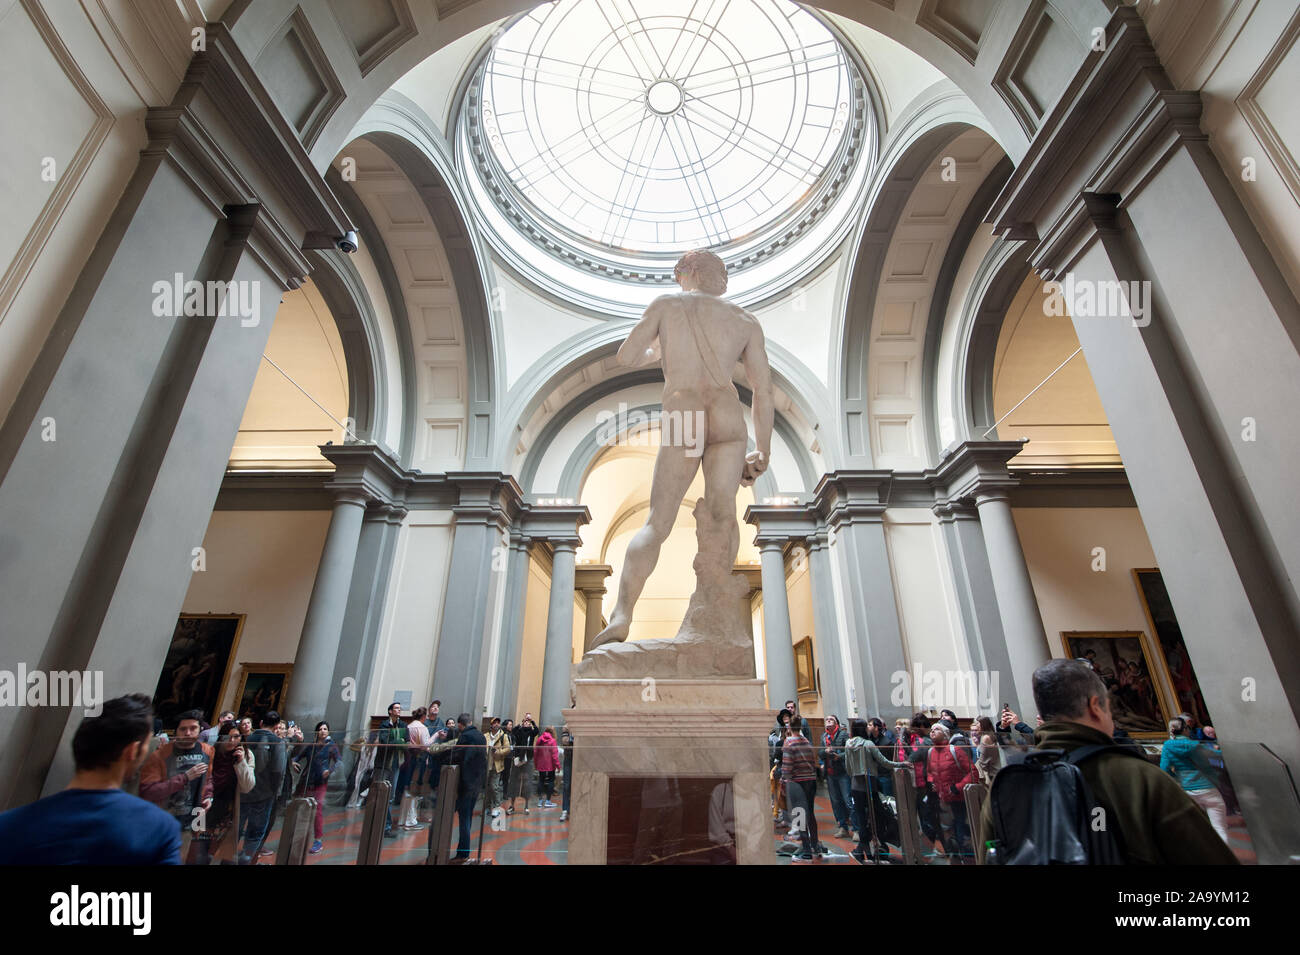 Firenze, Italia - 2019, Novembre 10: Galleria dell'Accademia, dove è conservato il David originale statua in marmo, il capolavoro di Michelangelo. Foto Stock